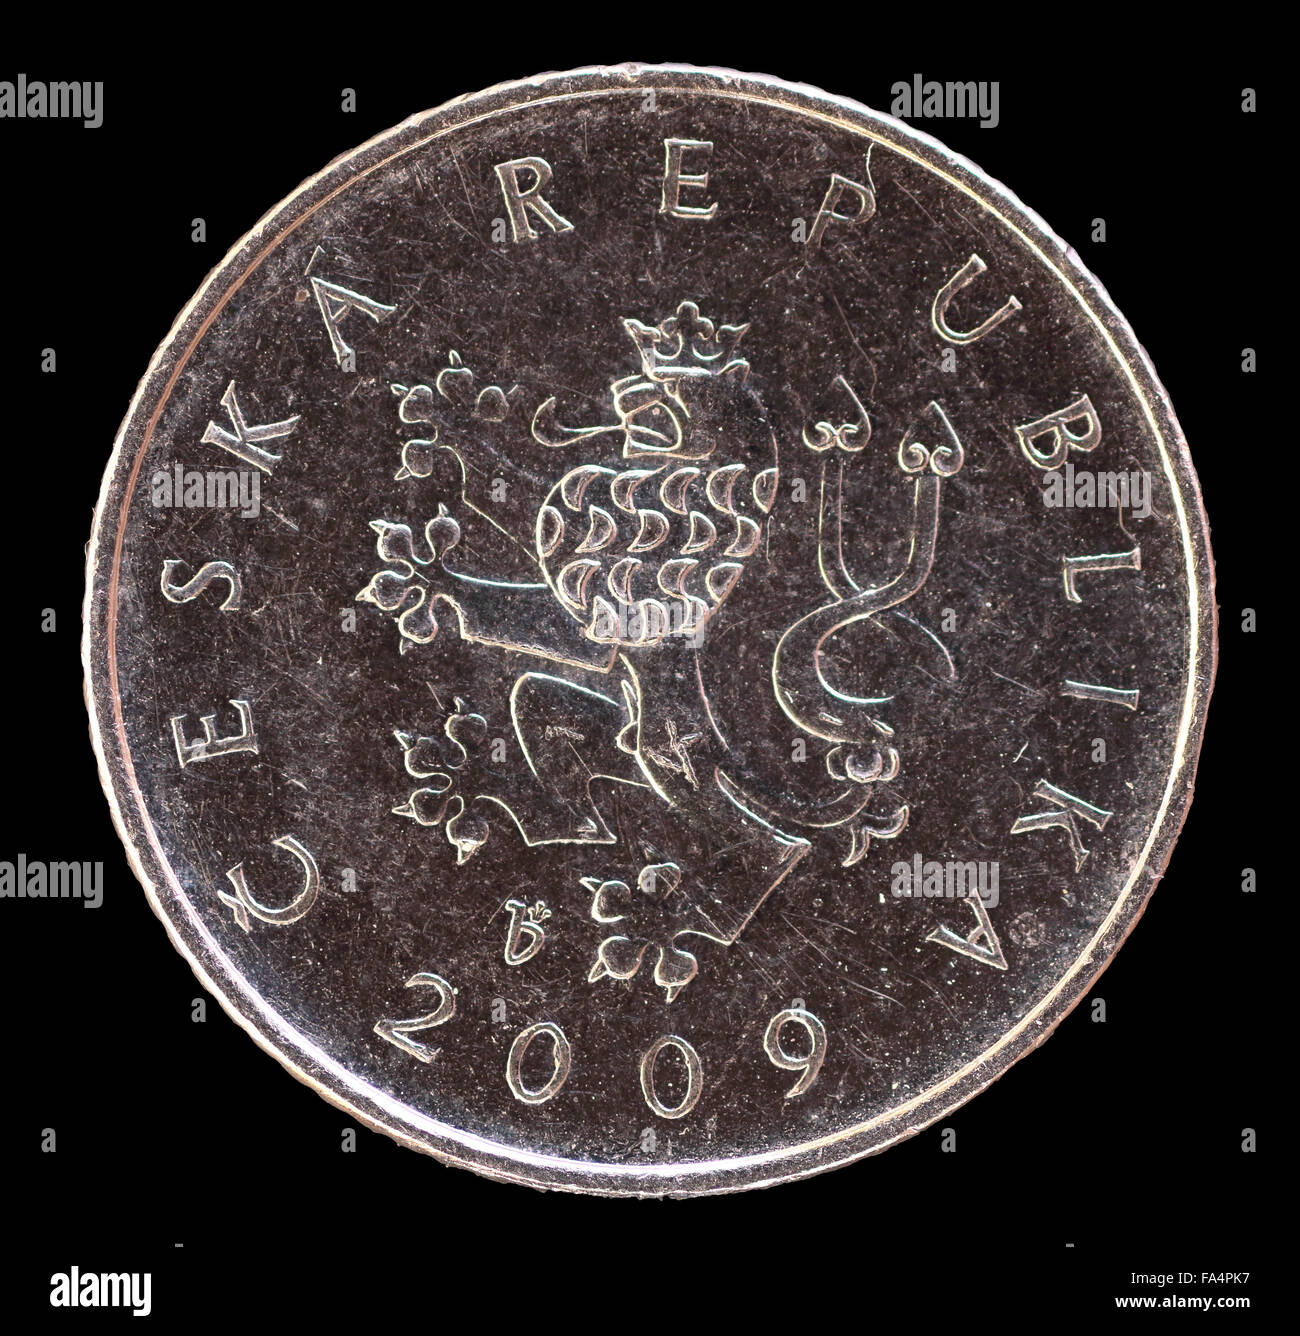 Der Kopf Gesicht einer Krone Münze, ausgestellt durch die Tschechische Republik im Jahr 2009, der Löwe, Symbol des Landes darstellt. Bild isoliert auf Stockfoto